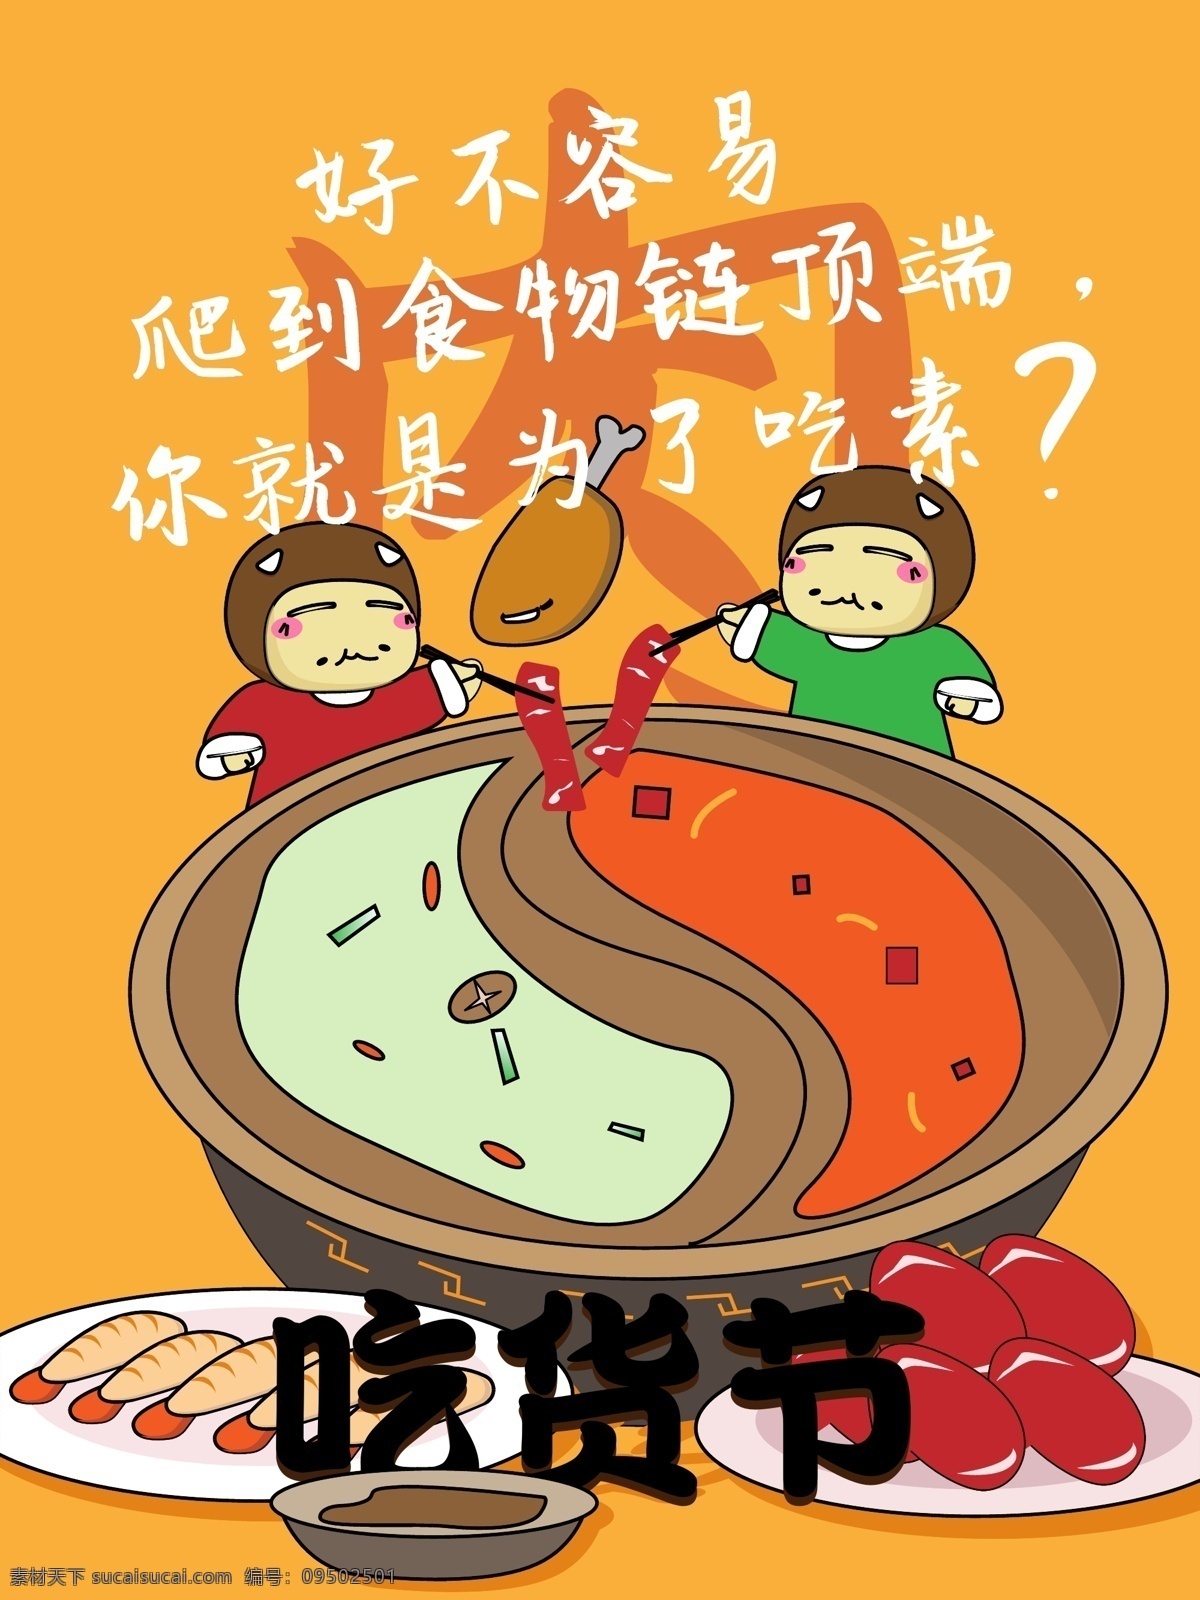 吃货 节 插画 肉类 火锅店 海报 幽默 吃货节 促销 创意海报 火锅 吃肉